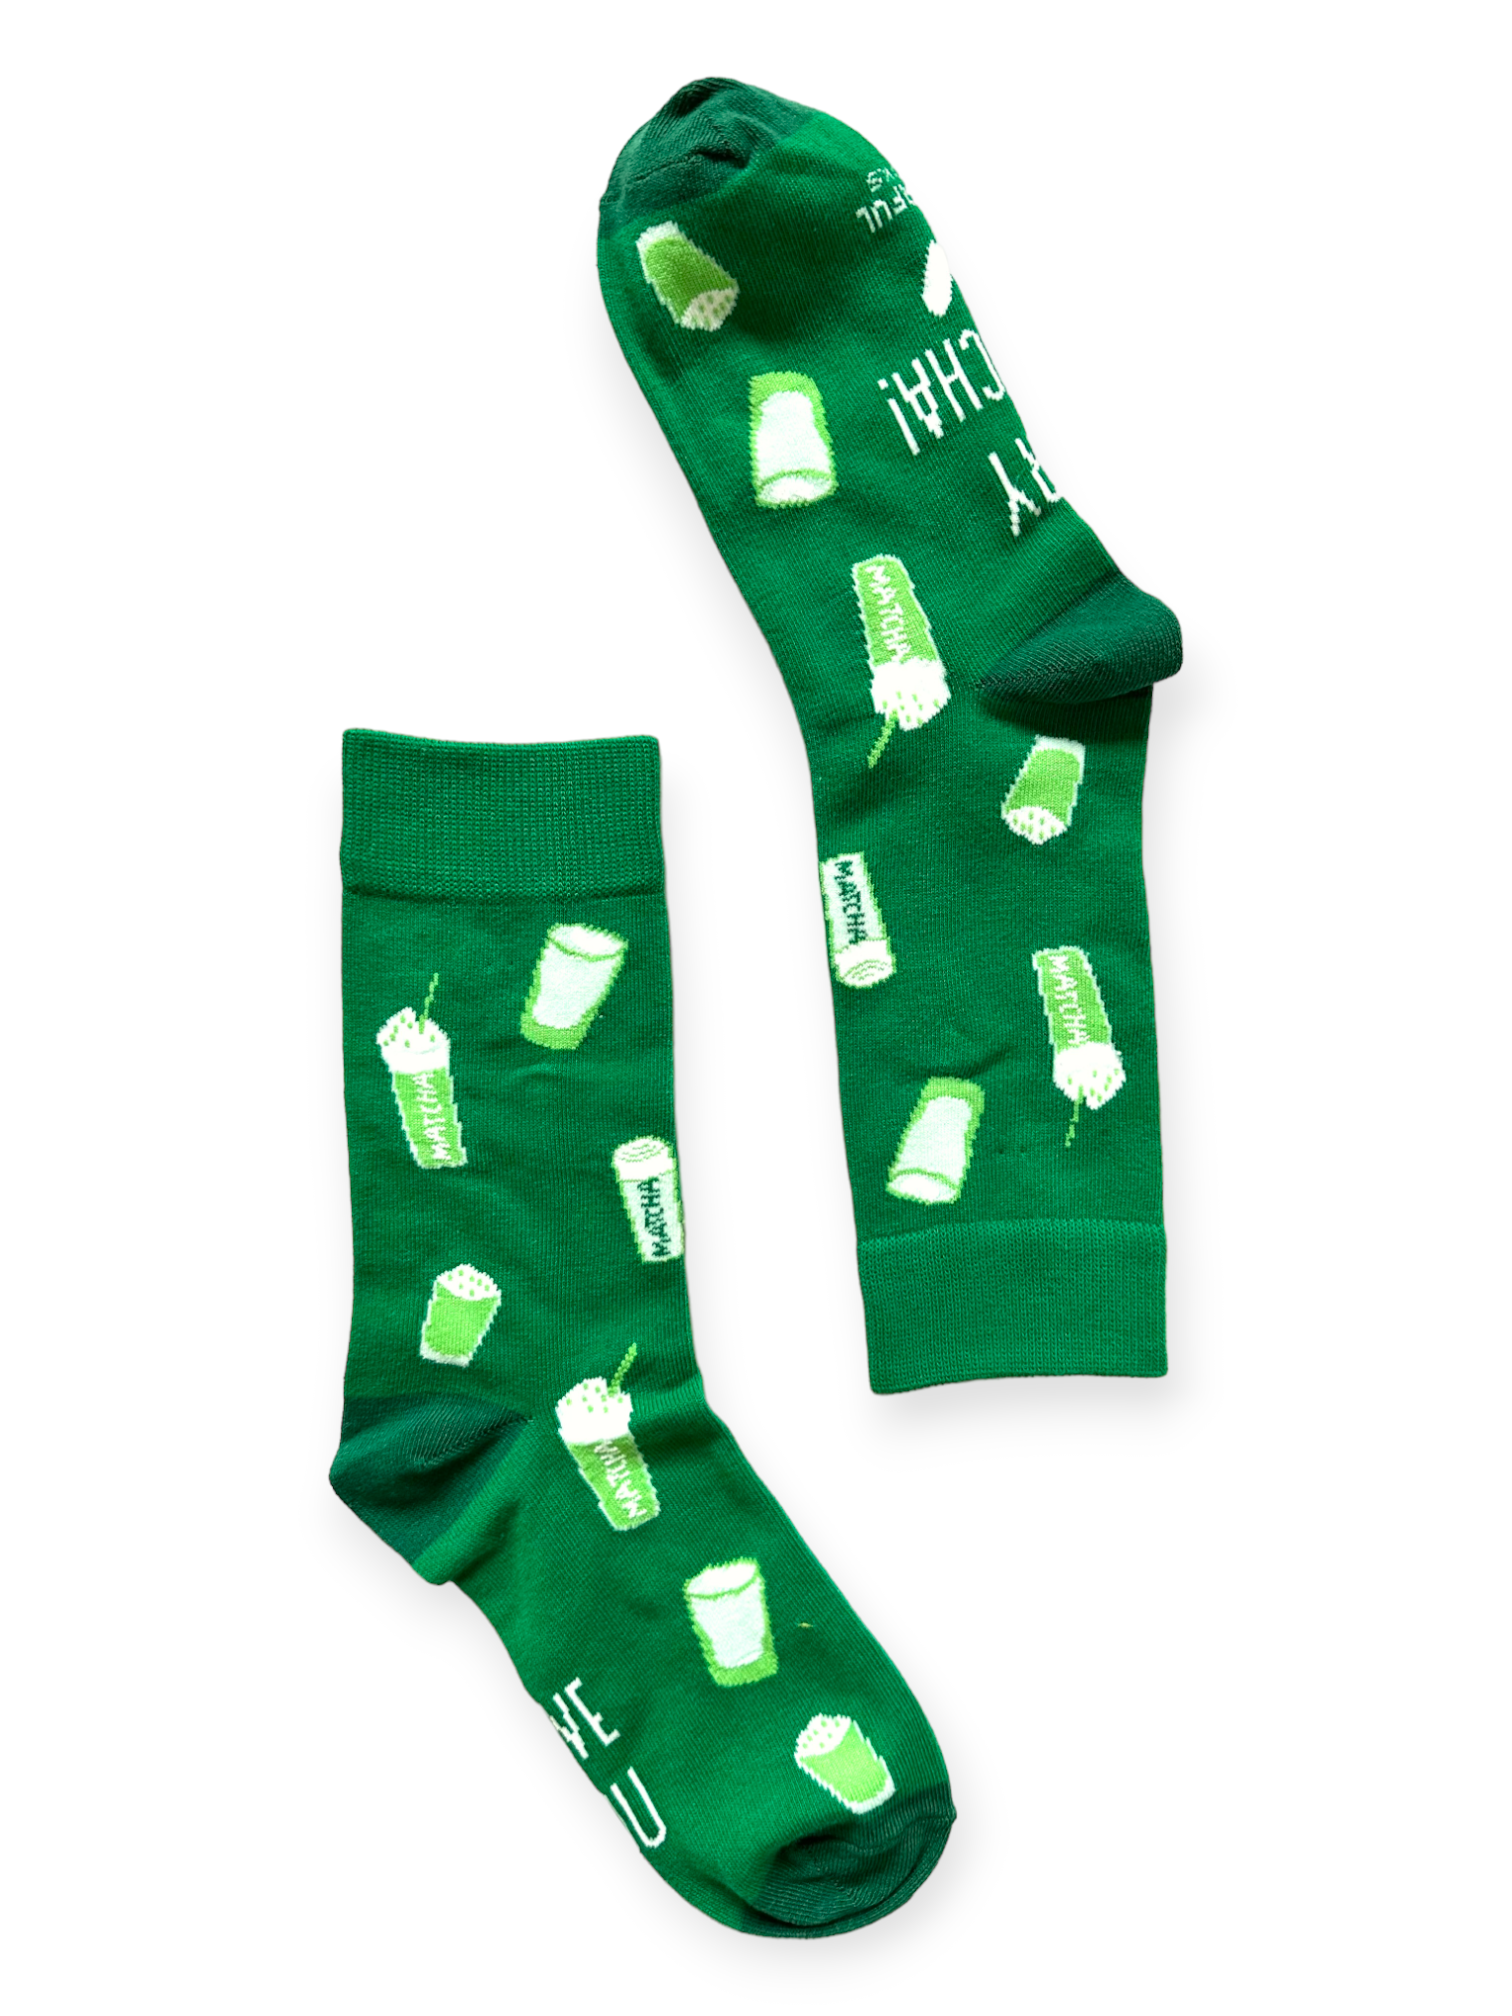 Matcha Socks